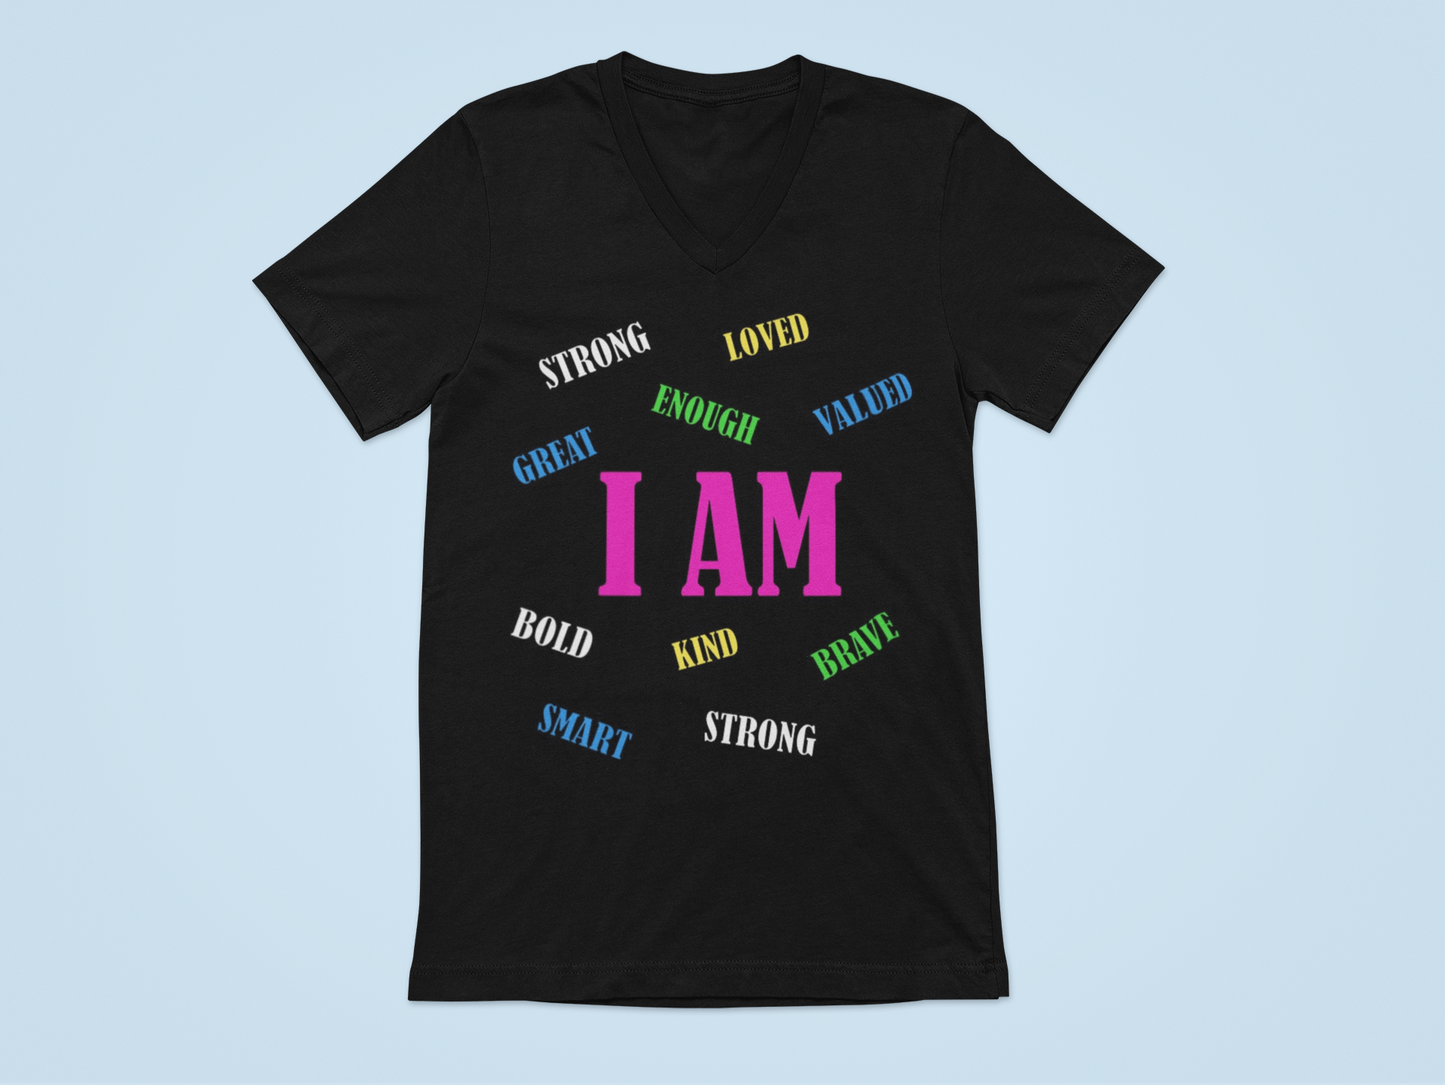 I am... T-shirt